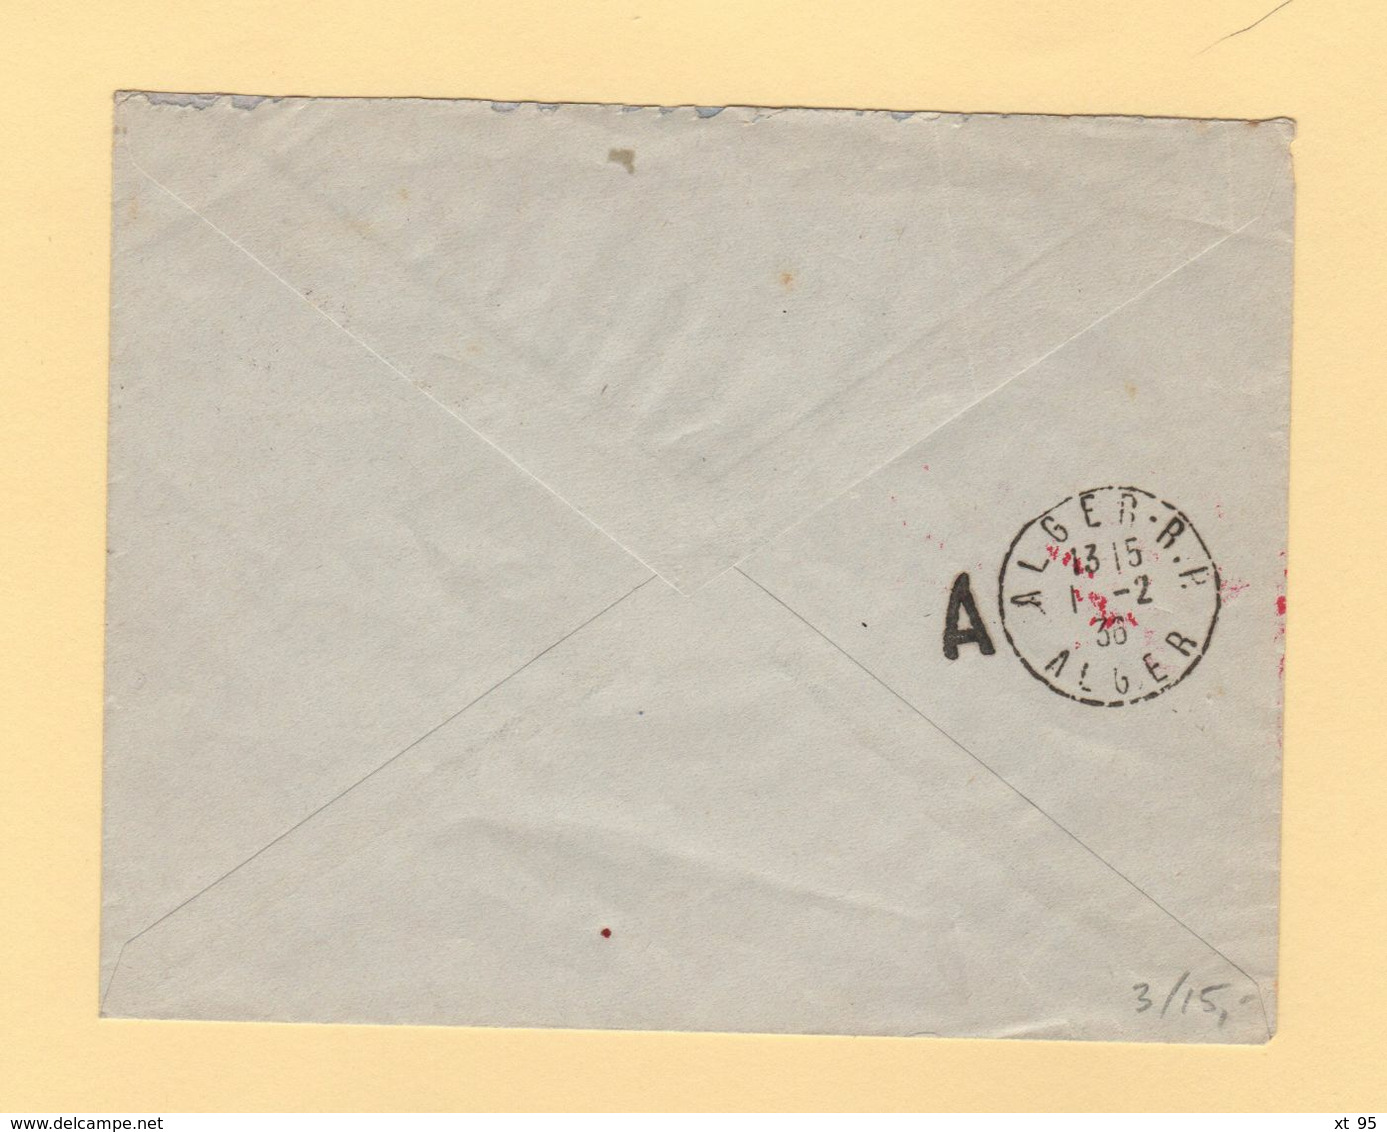 Tunisie - Premier Courrier Postal Aerien Tunisie Algerie - 1er Fevrier 1936 - Aéreo